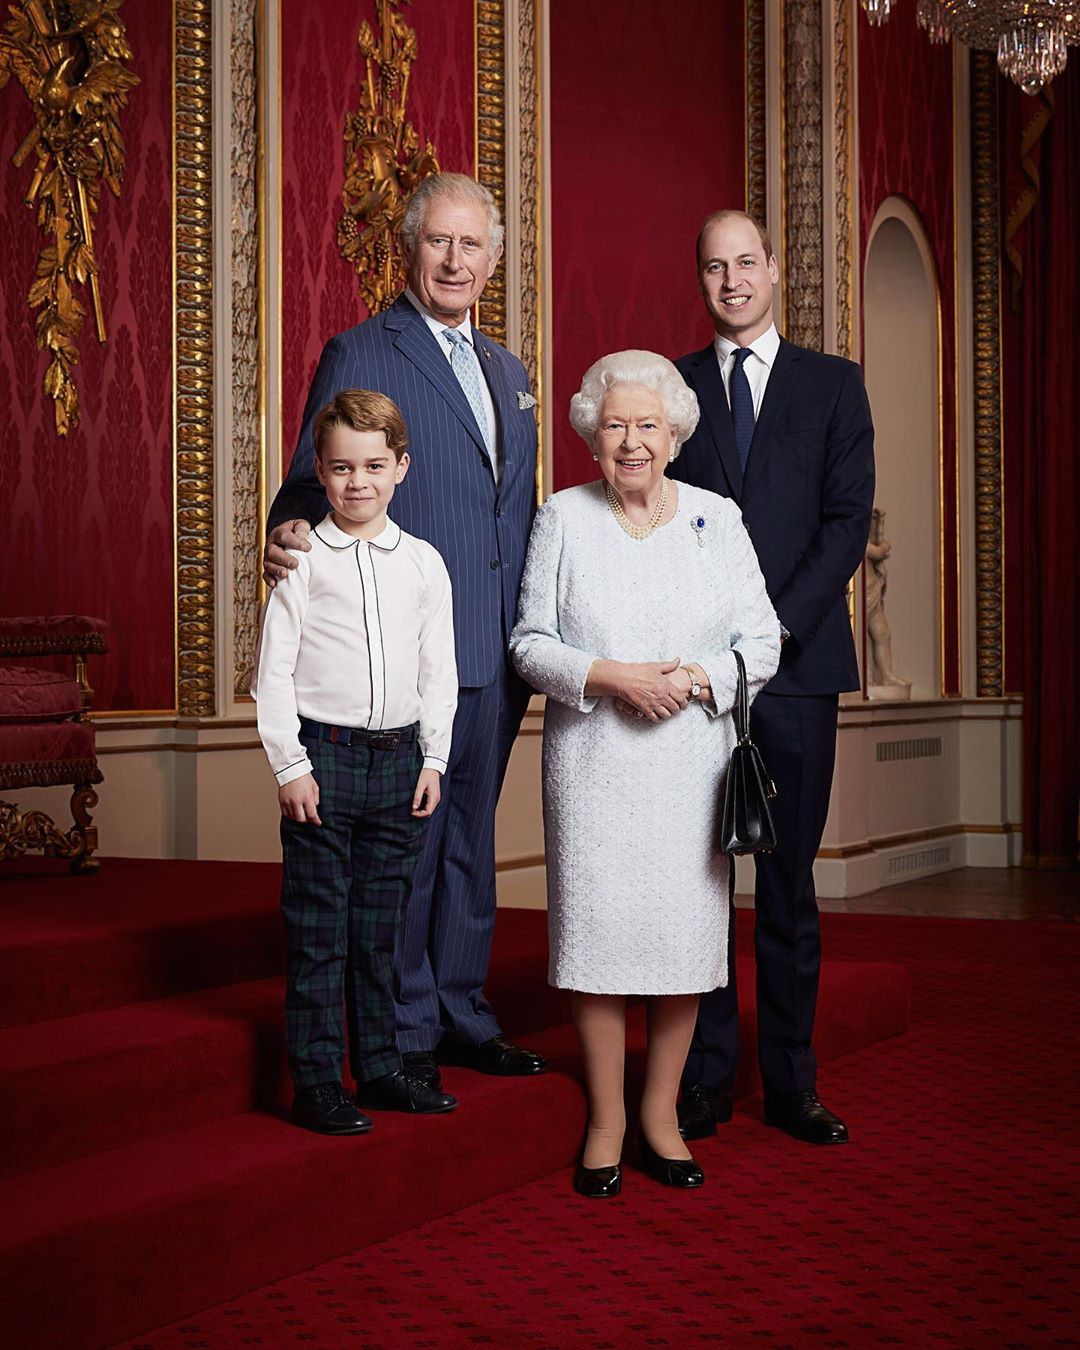 Это объявление войны: &quot;уход&quot; Маркл и принца Гарри шокировал королевскую семью